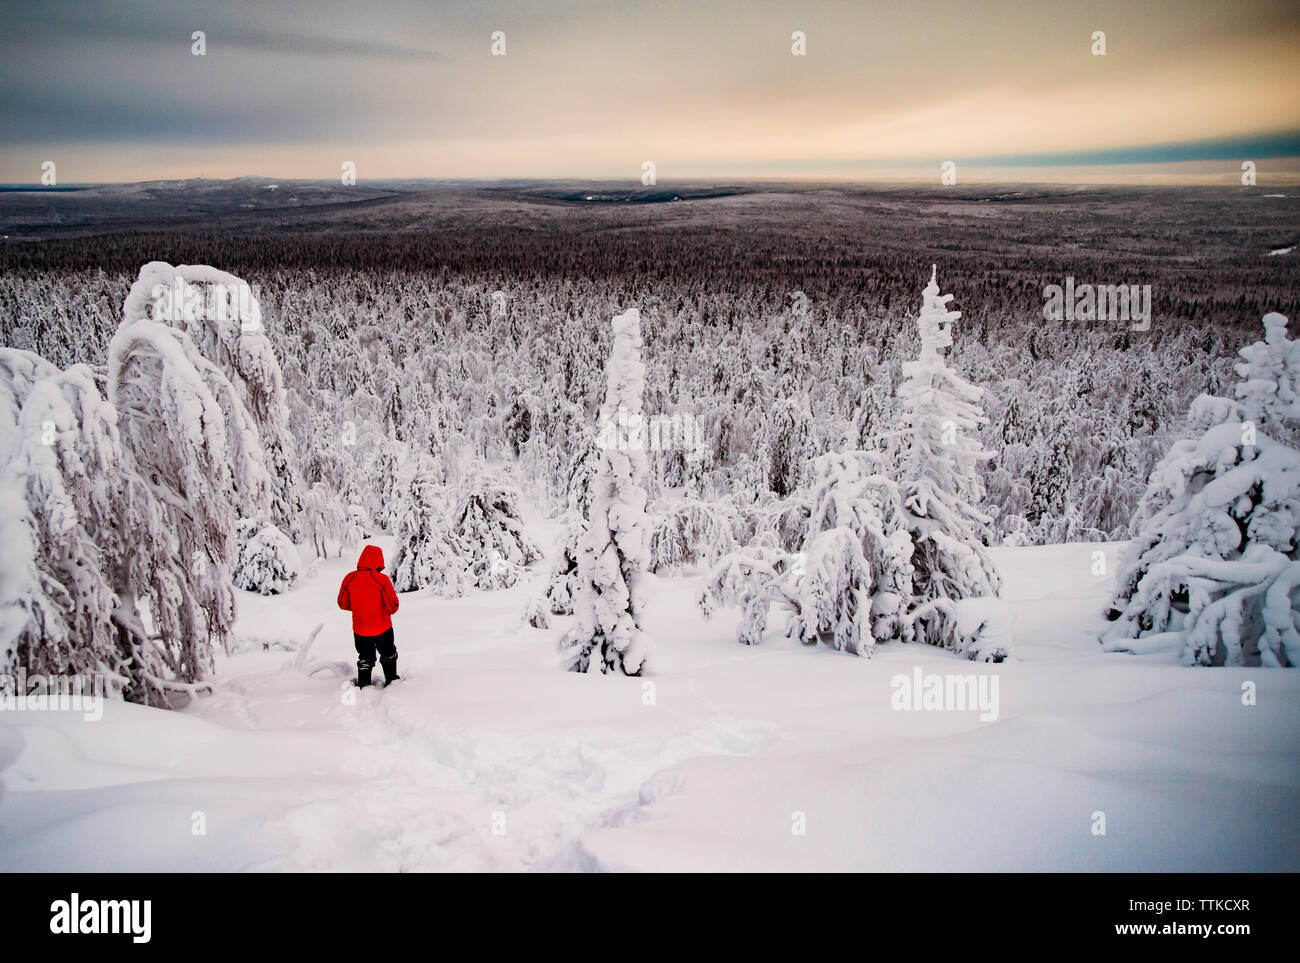 Menschen wandern auf schneebedeckten Berg gegen bewölkter Himmel Stockfoto